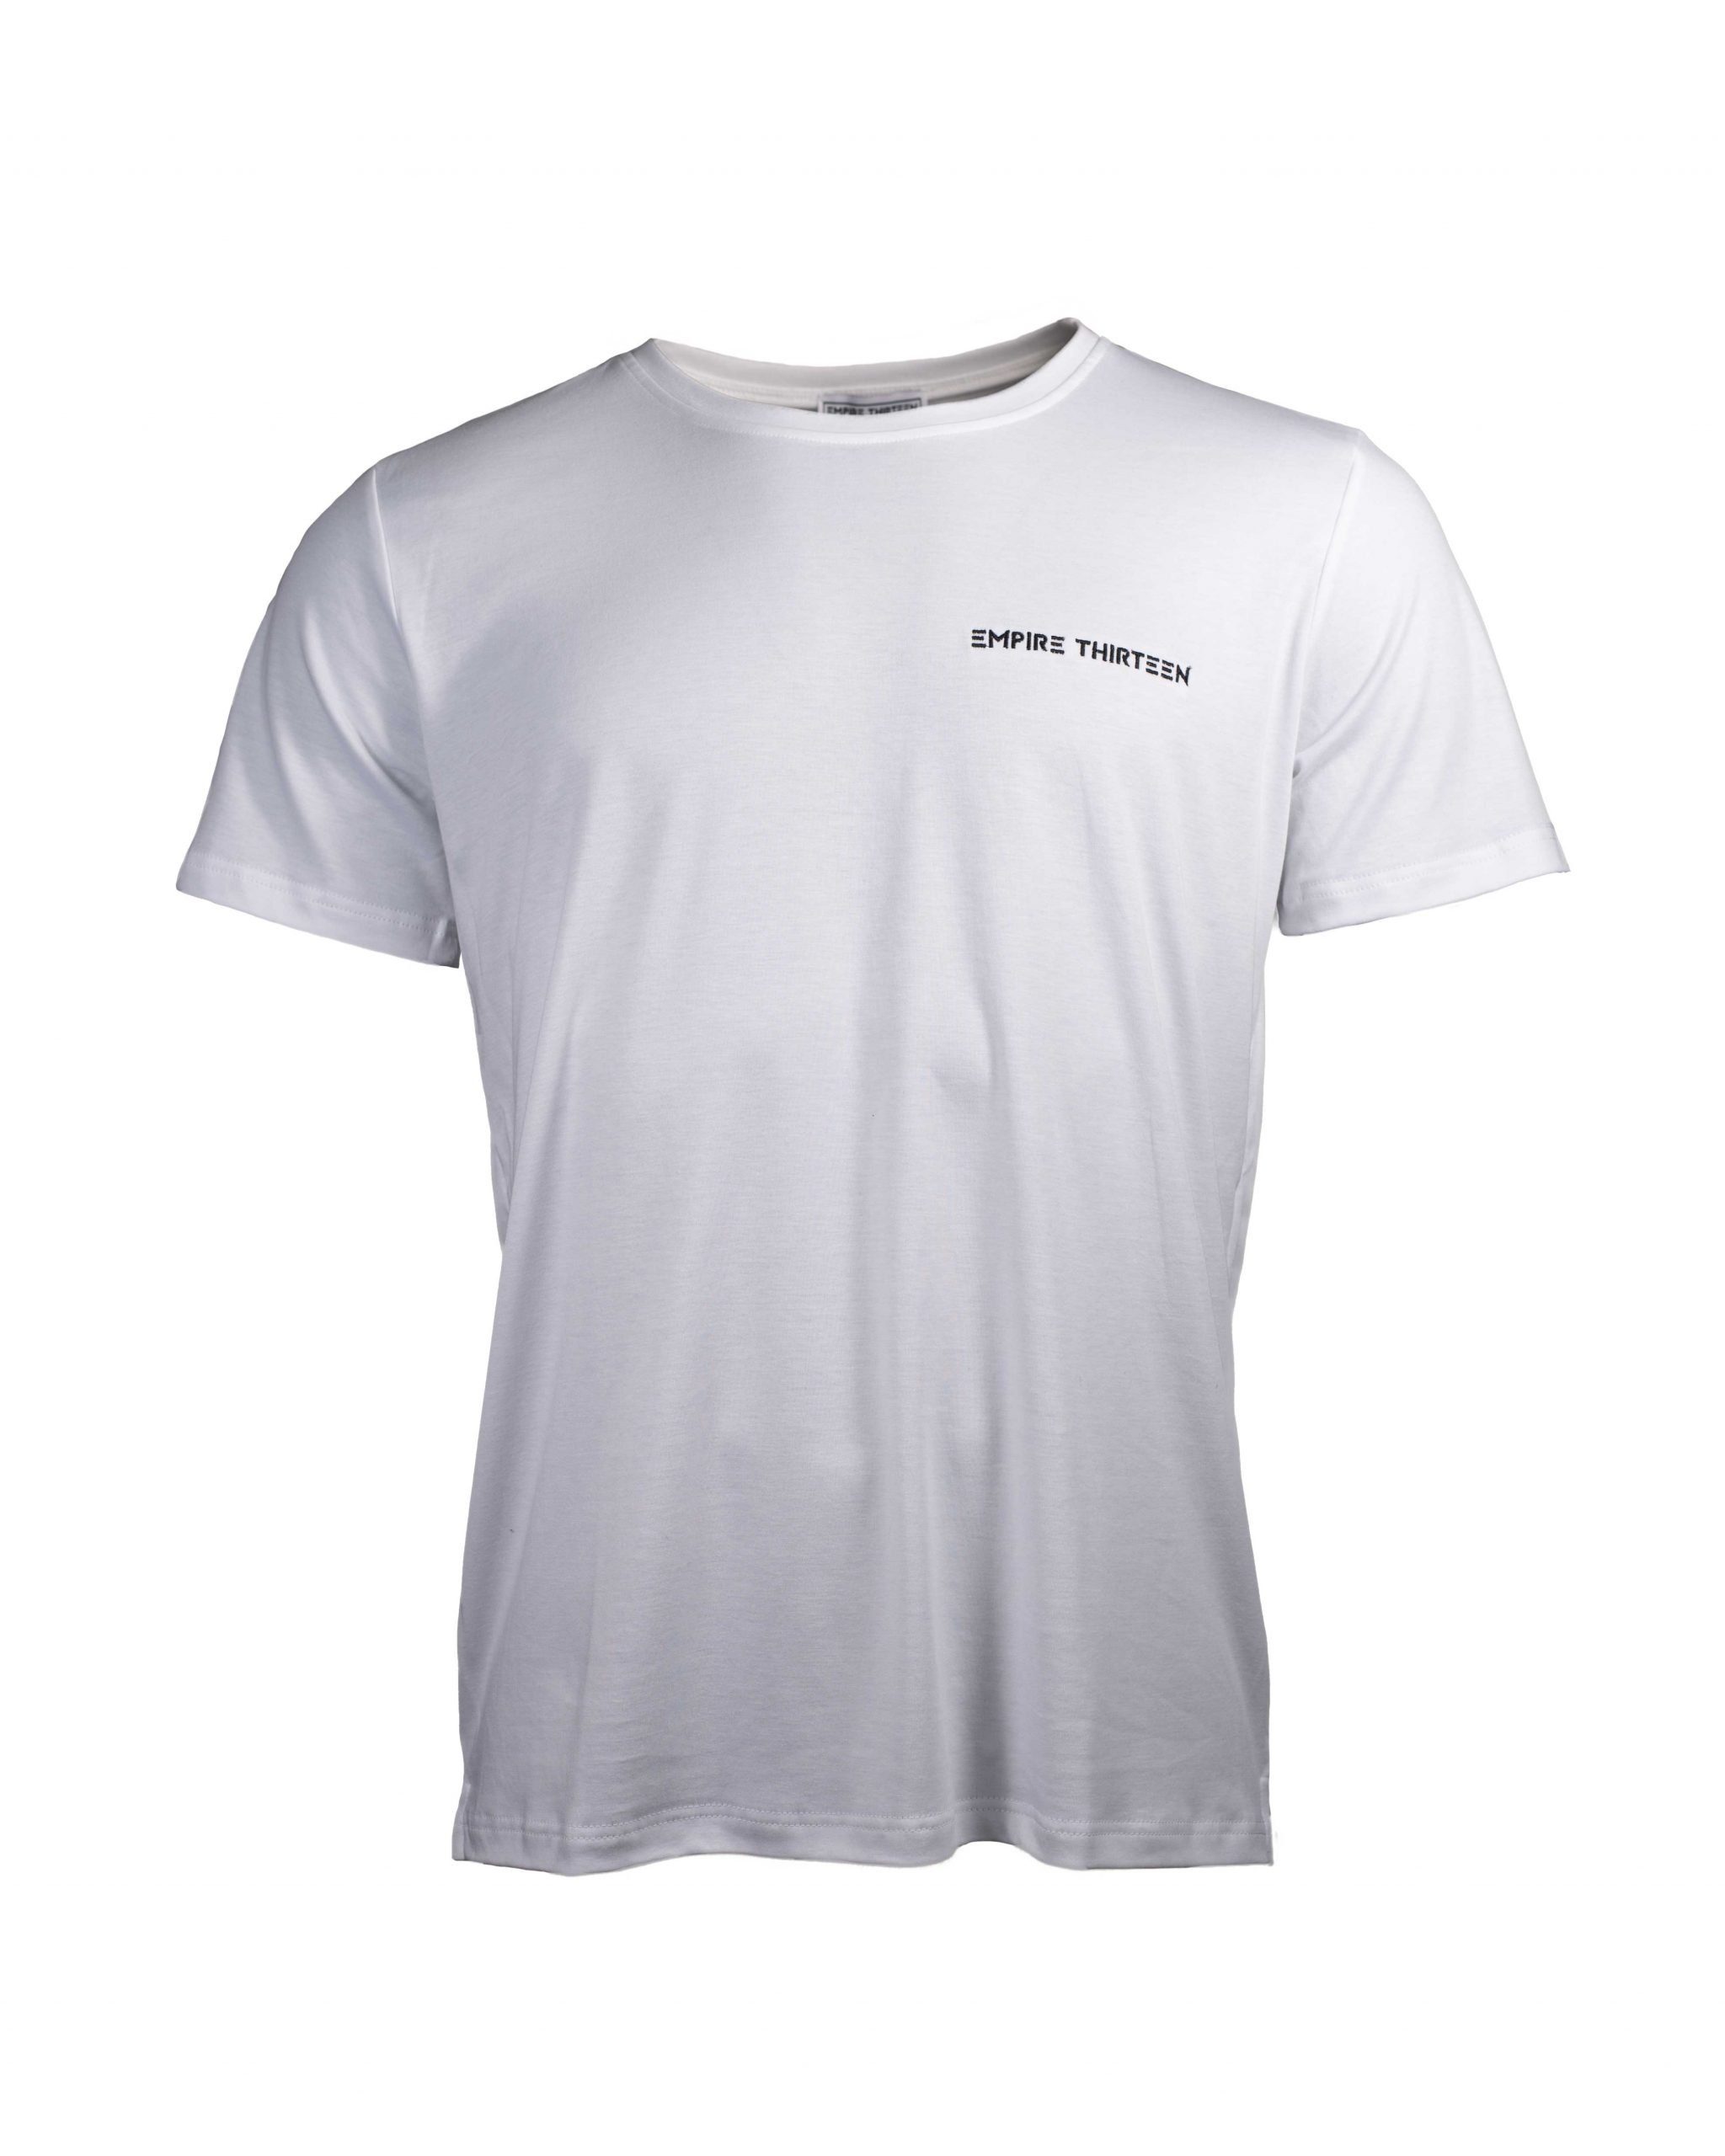 EMPIRE-THIRTEEN T-Shirt "EMPIRE-THIRTEEN" BASIC SHIRT MEN Stickerei Weiß